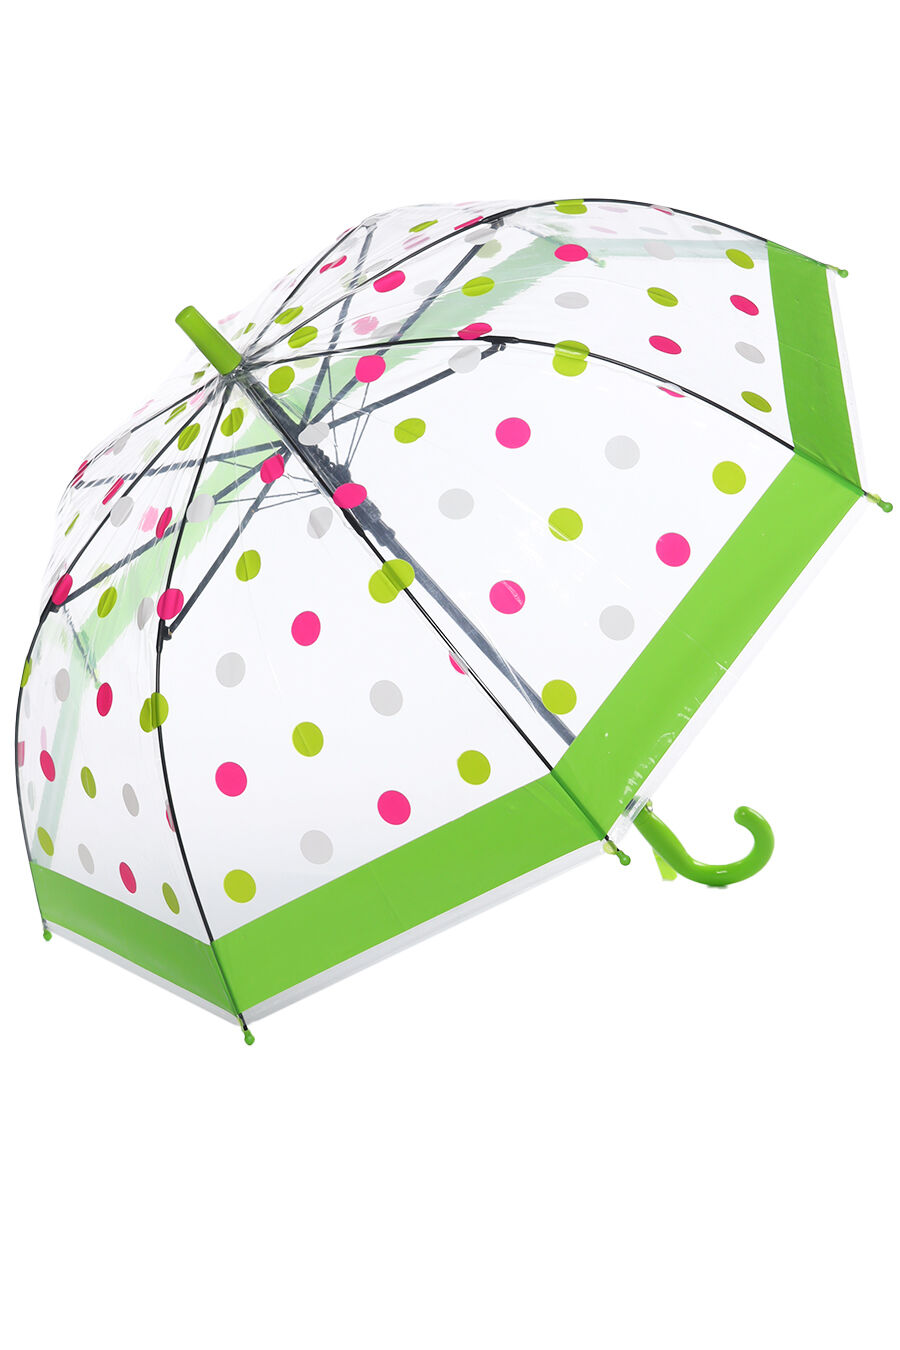 Зонт дет. Panda 0002-2 полуавтомат трость (зеленый)